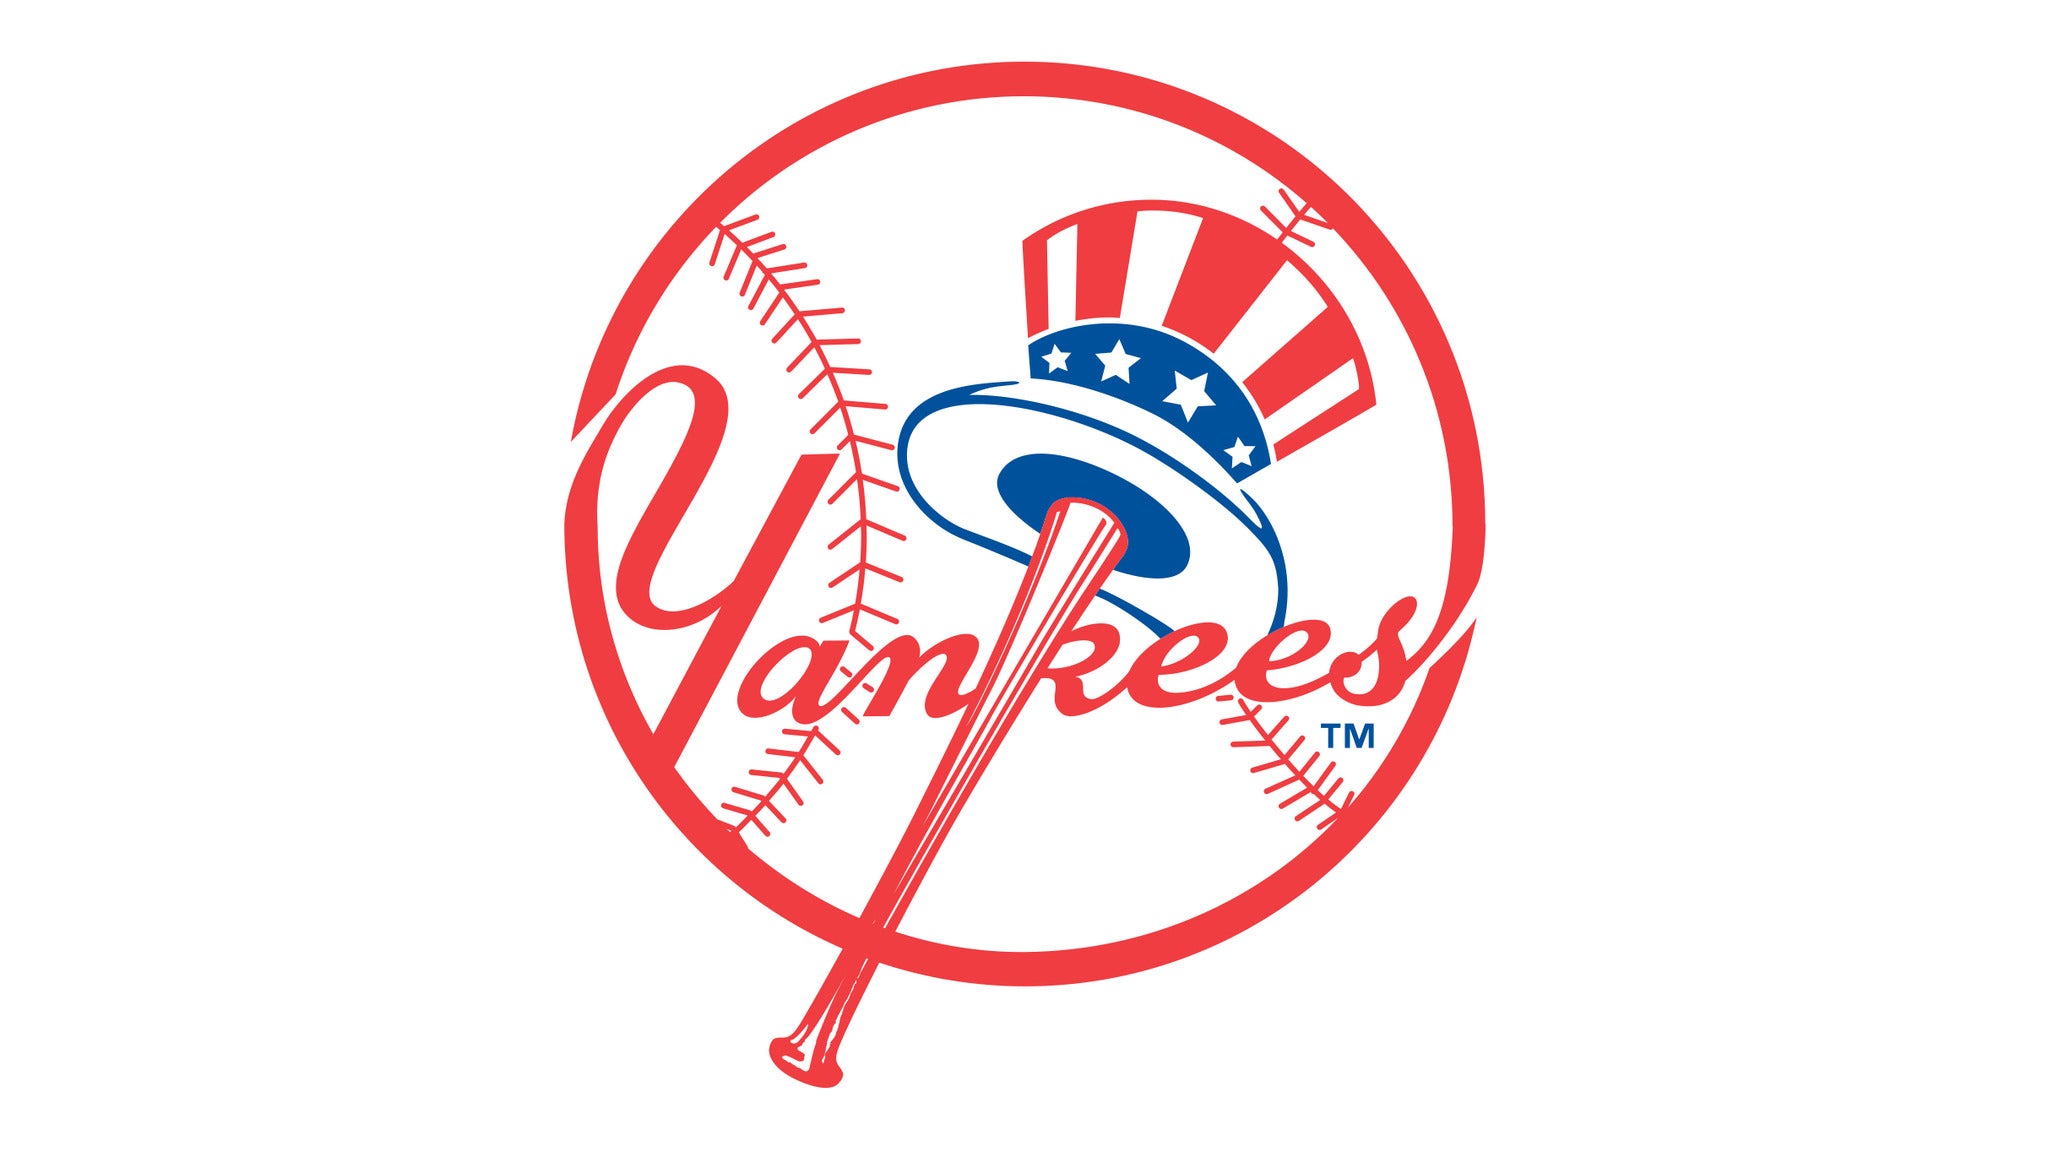 New York Yankees v. New York Mets